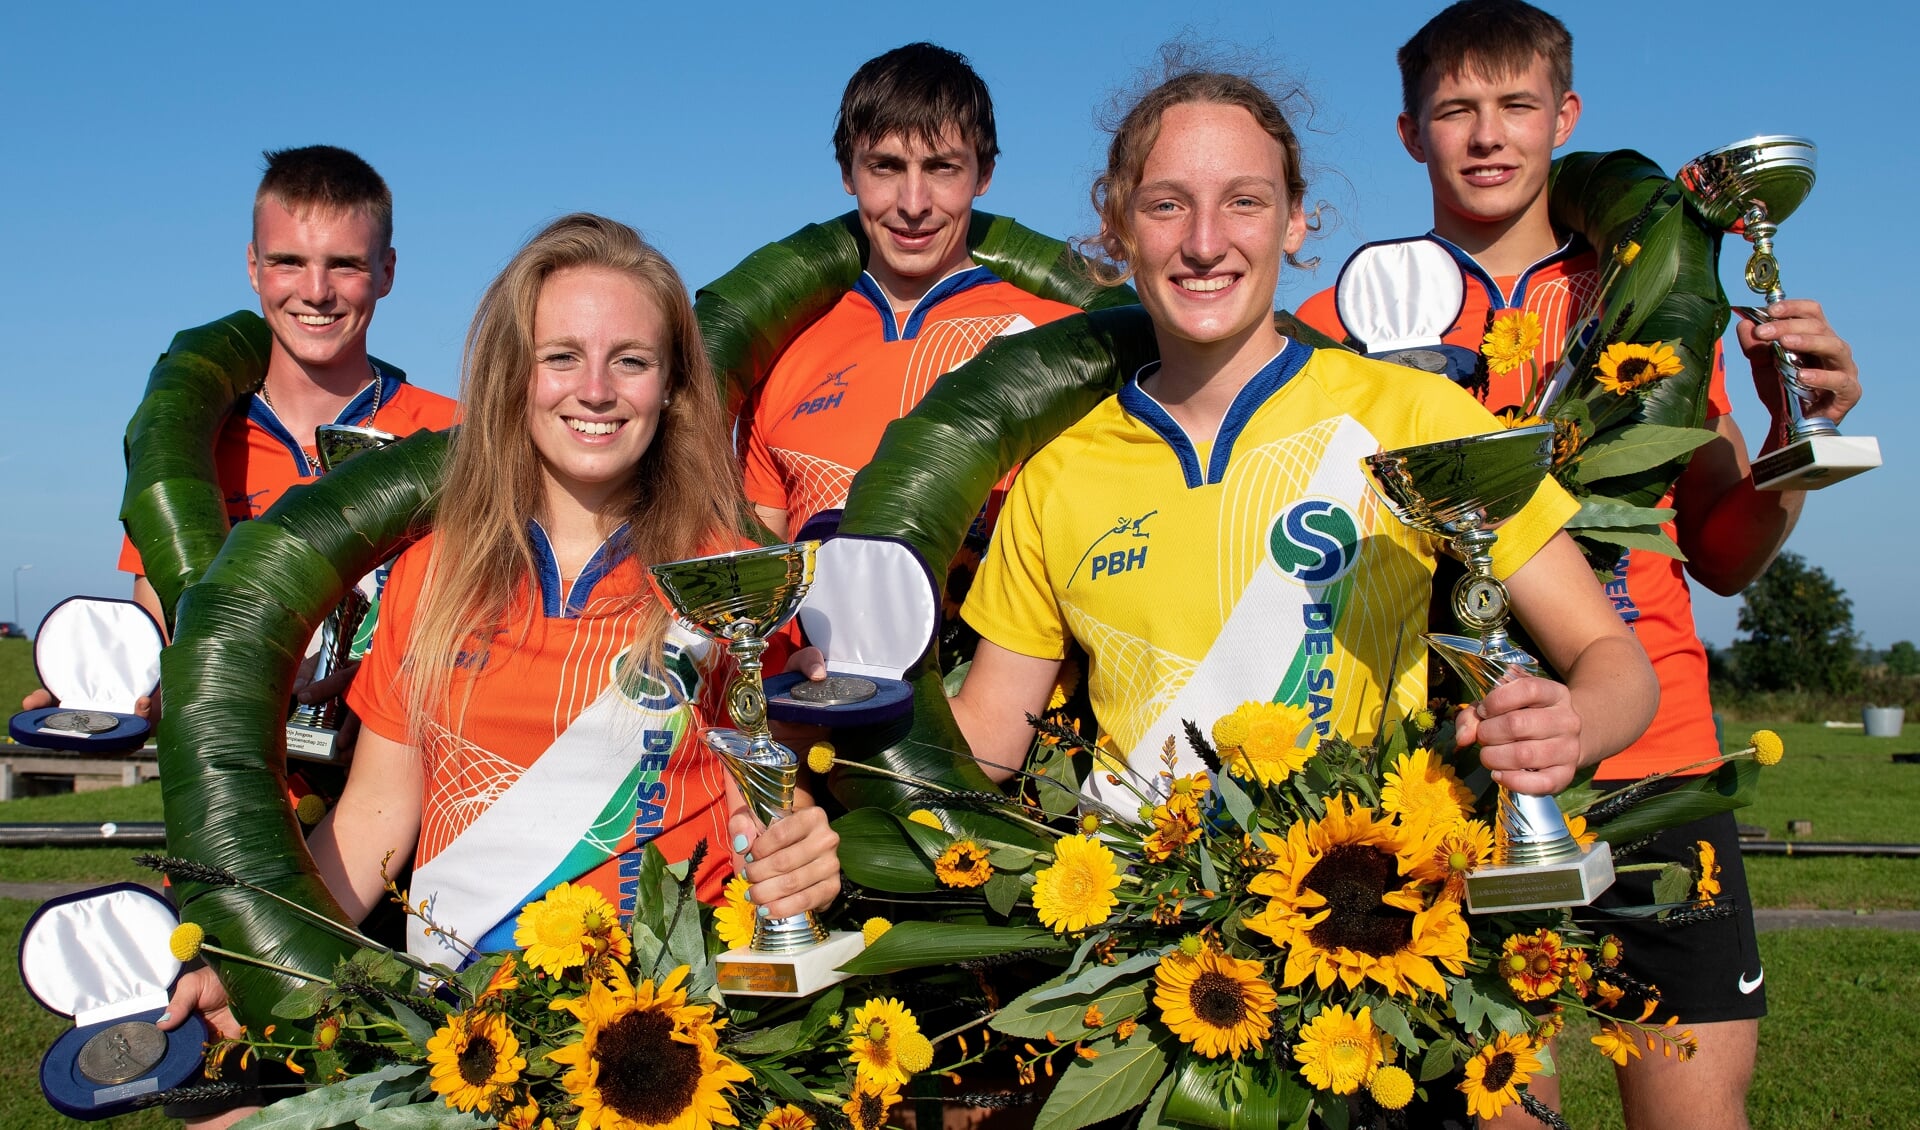 De winnaars van het Hollands Kampioenschap. Met lauwerkransen, bekers en zonnebloemen.